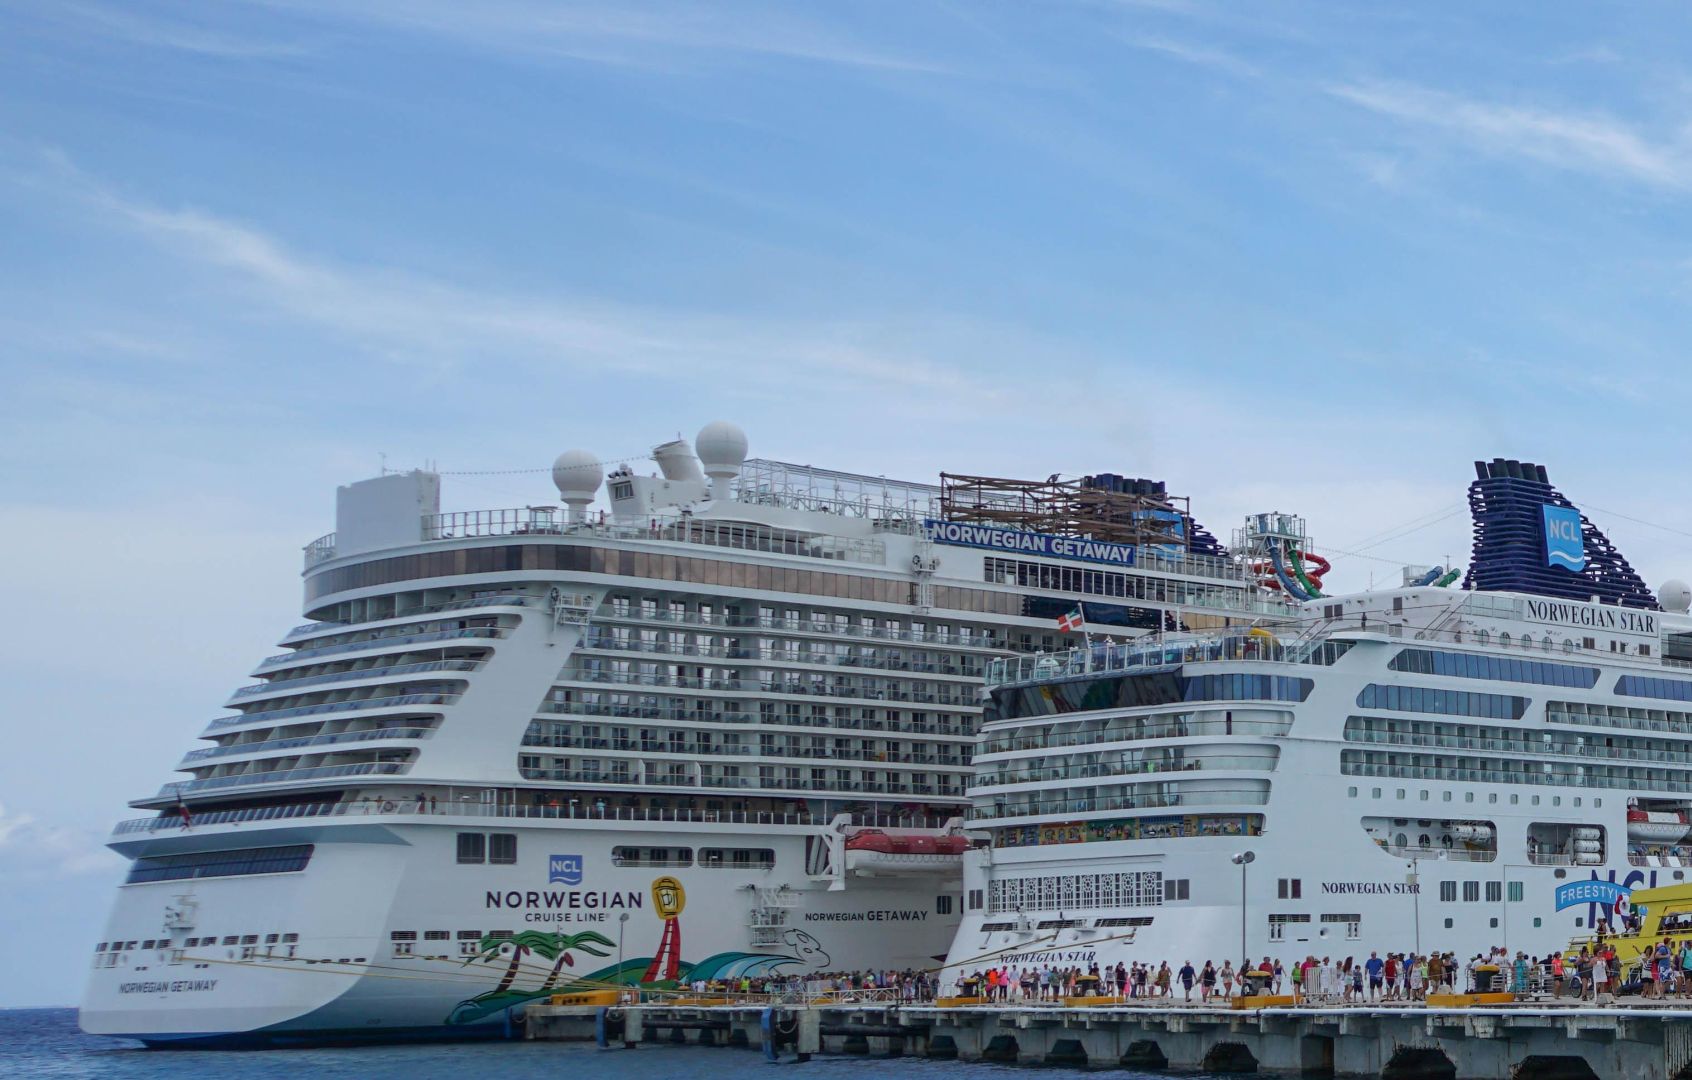 Cruise Ship Tour